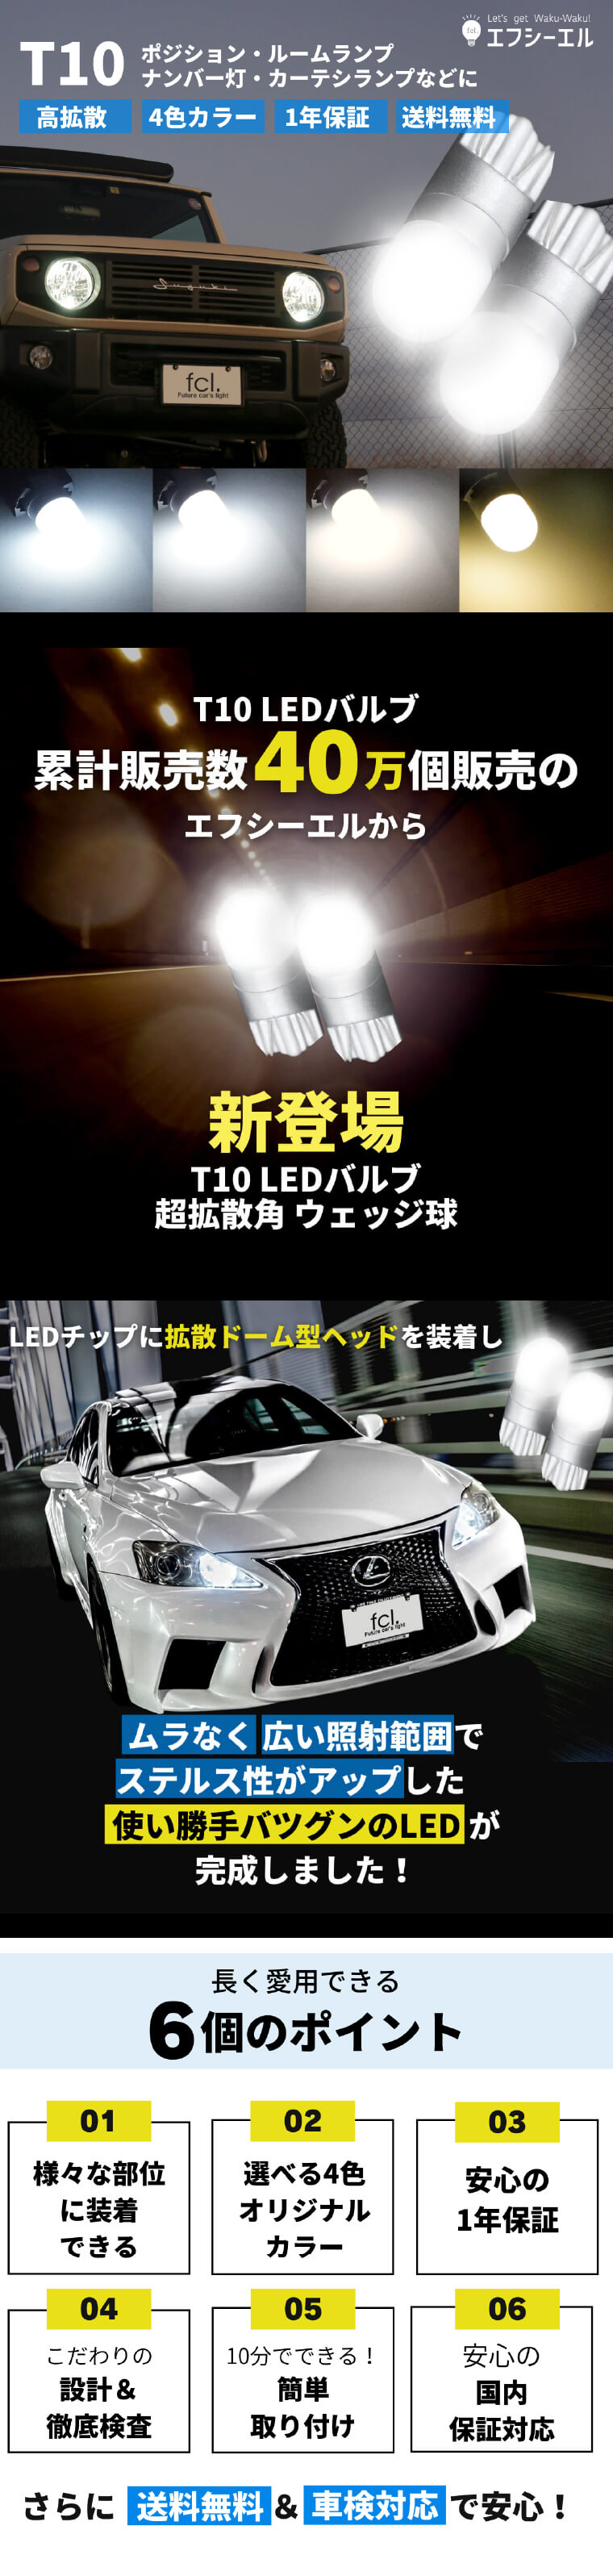 T10 LEDバルブ 超拡散 ウェッジ球 2個セット公式通販fcl. 車のLED専門店